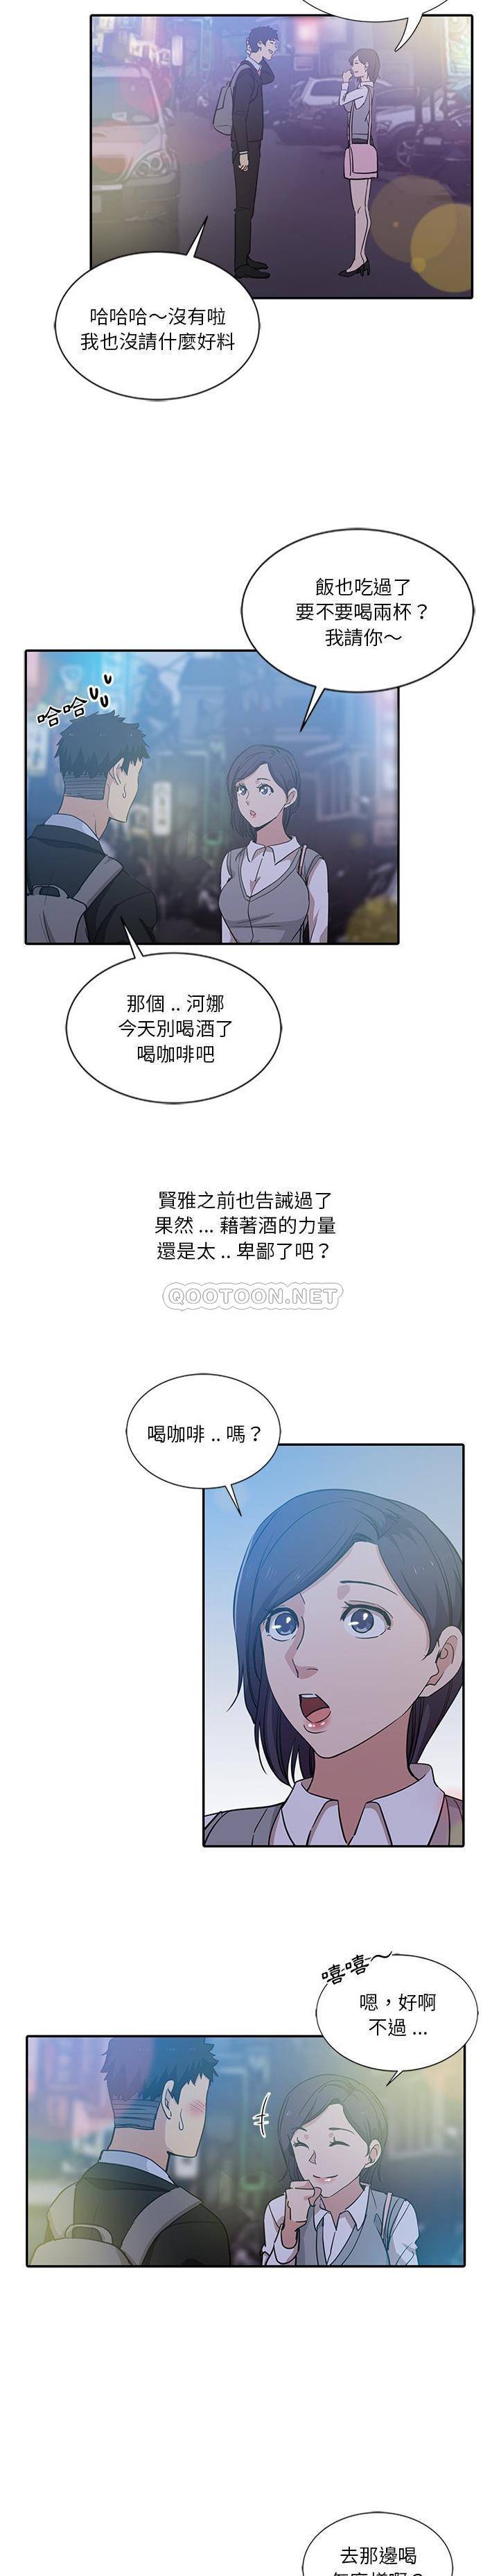 韩国污漫画 危險純友誼 第8话 3